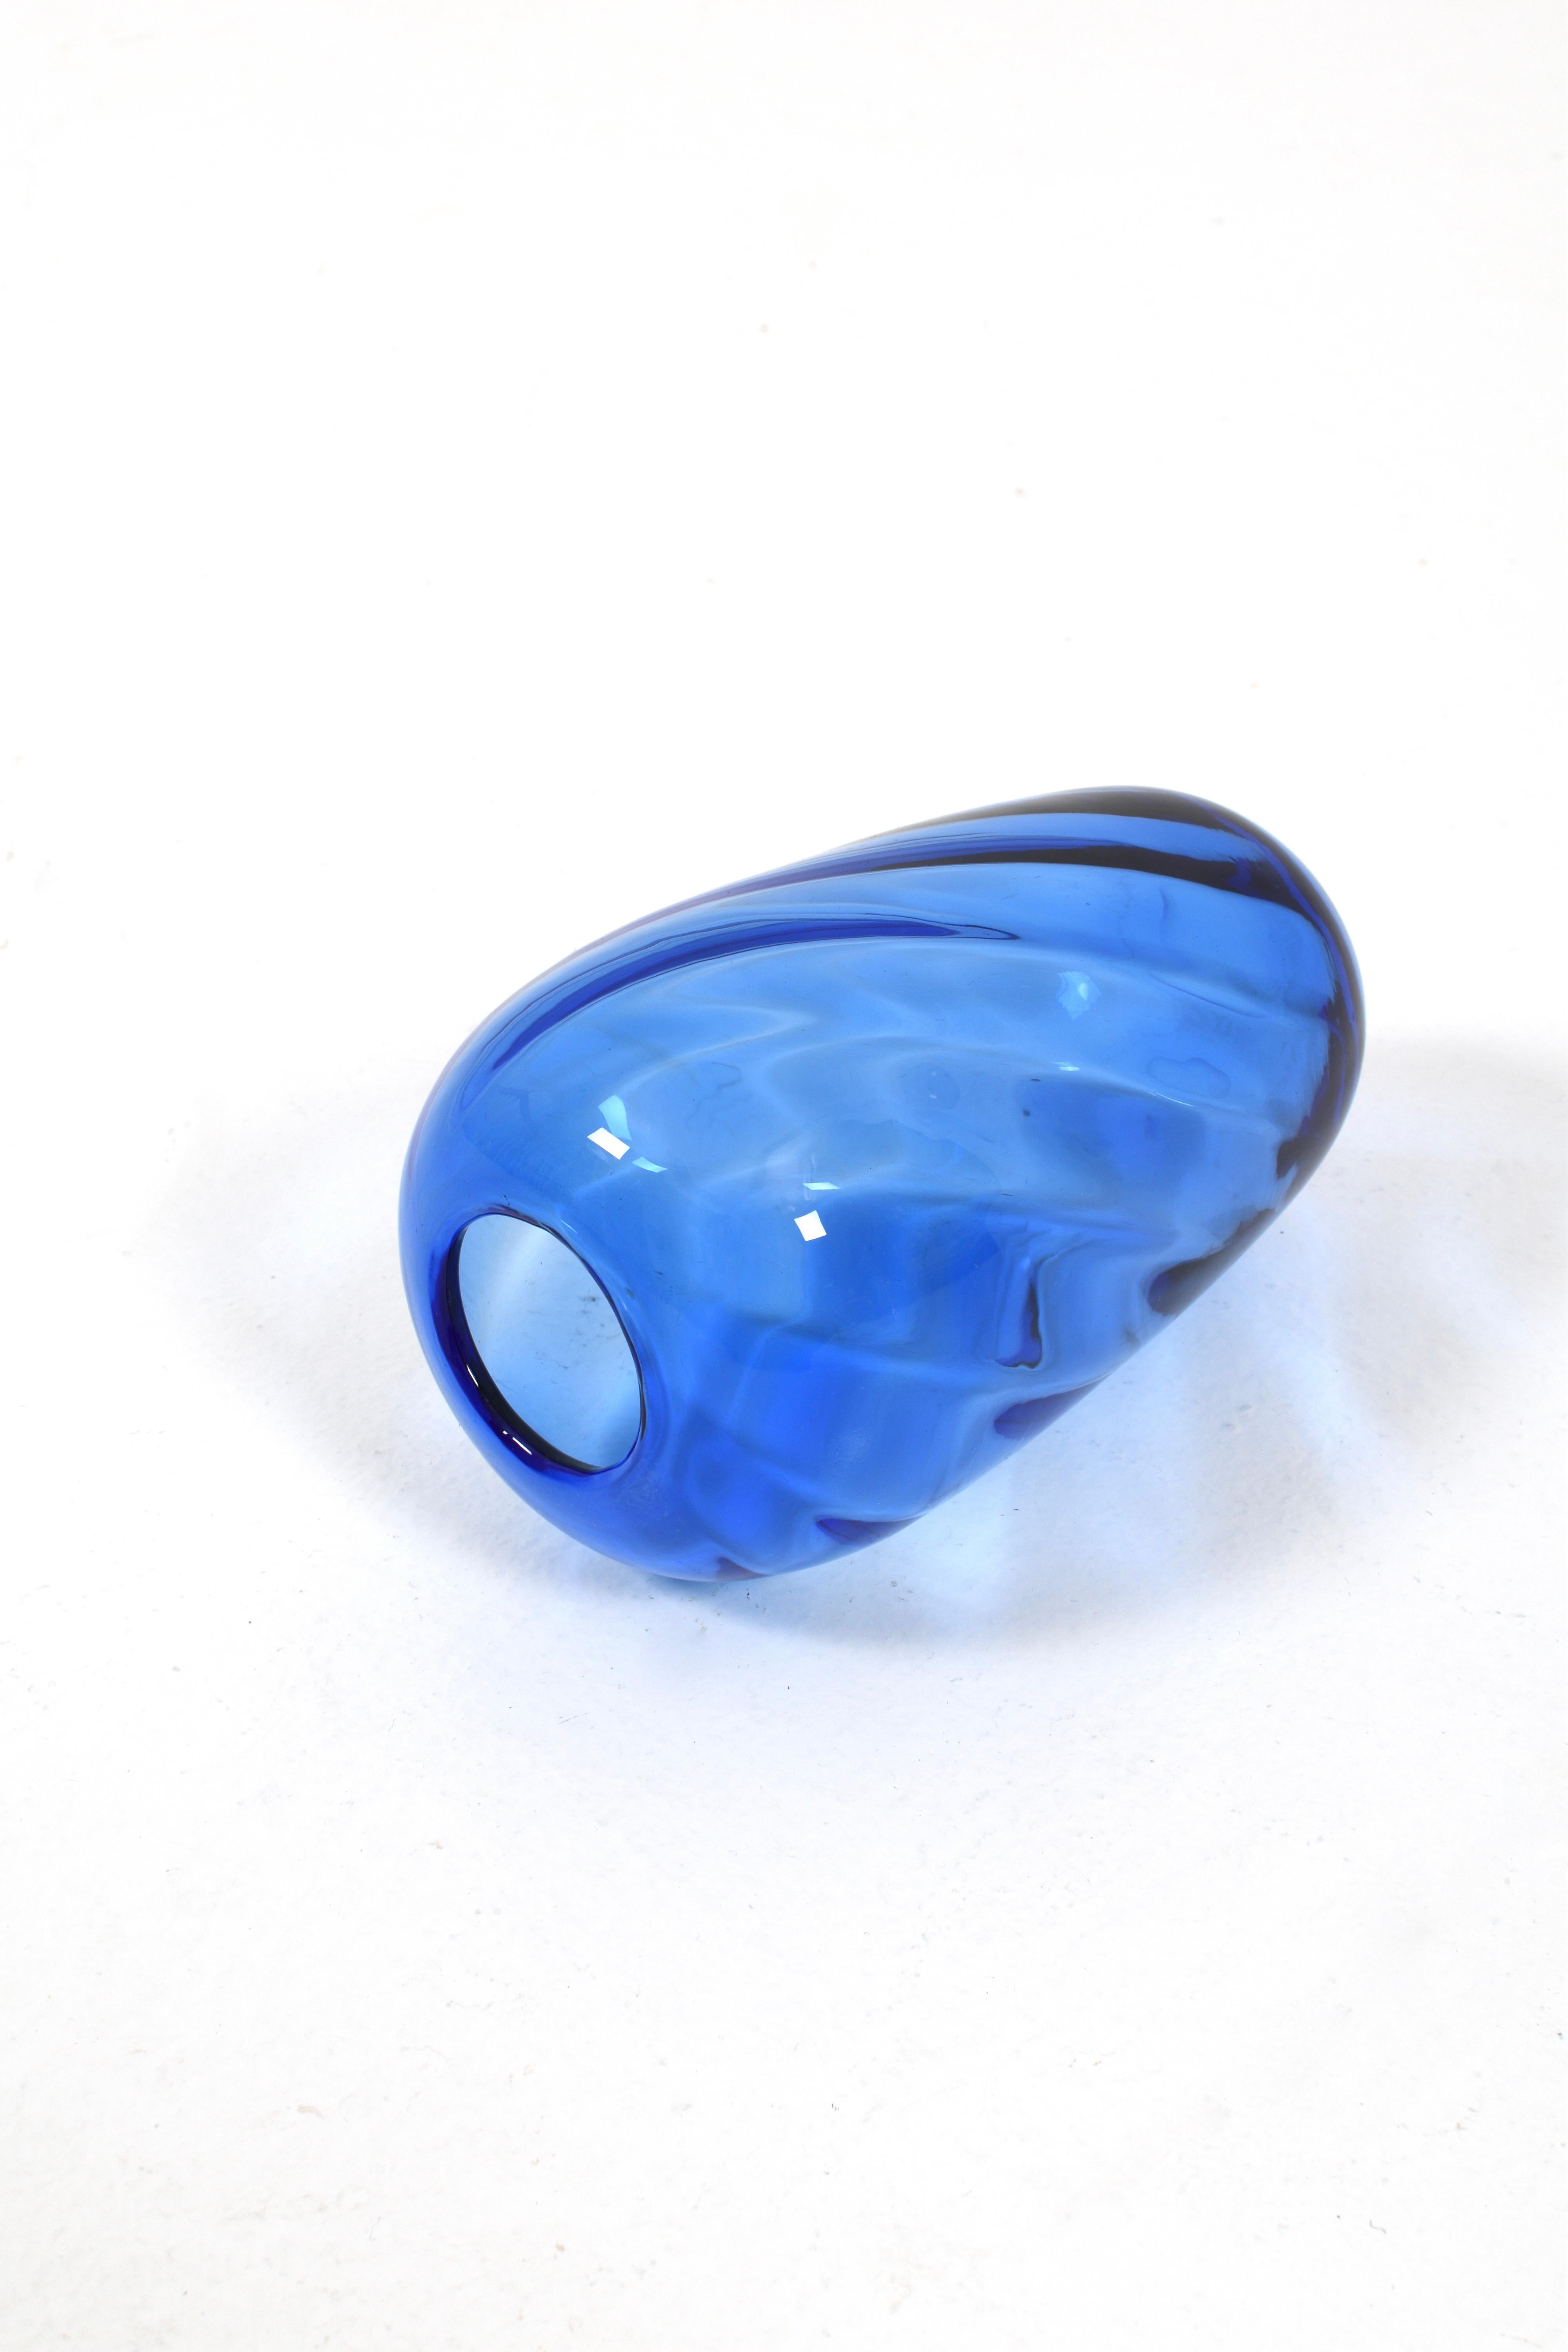 Die blaue Glasvase von Reijmyre Glasbruk ist eine elegante und zeitlose Zierde für Ihr Zuhause. Diese schöne Vase wird von den erfahrenen Glashandwerkern von Reijmyre mit viel Geschick und Liebe zum Detail hergestellt und repräsentiert das Beste der